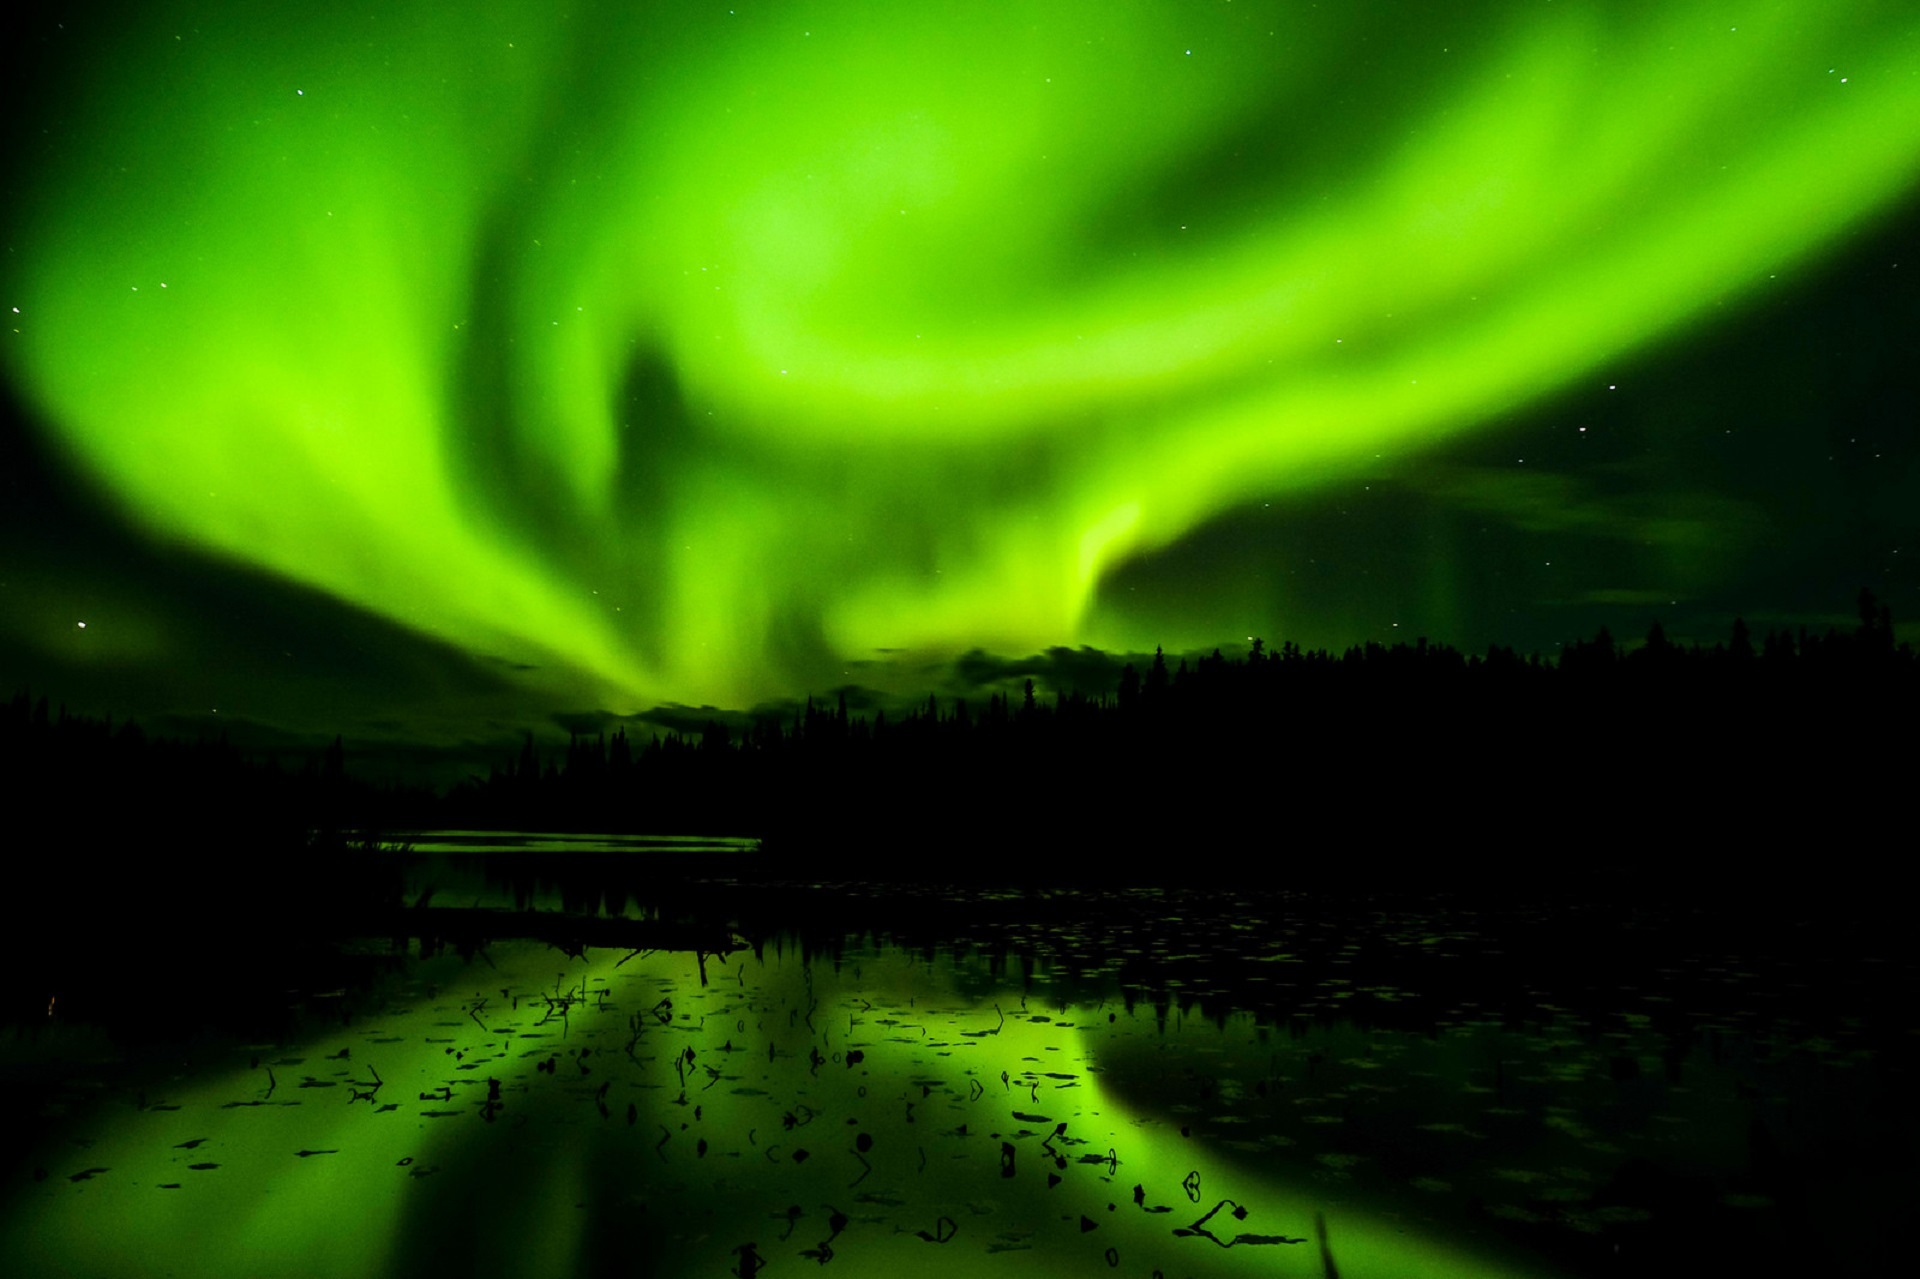 Aurora borealis photo